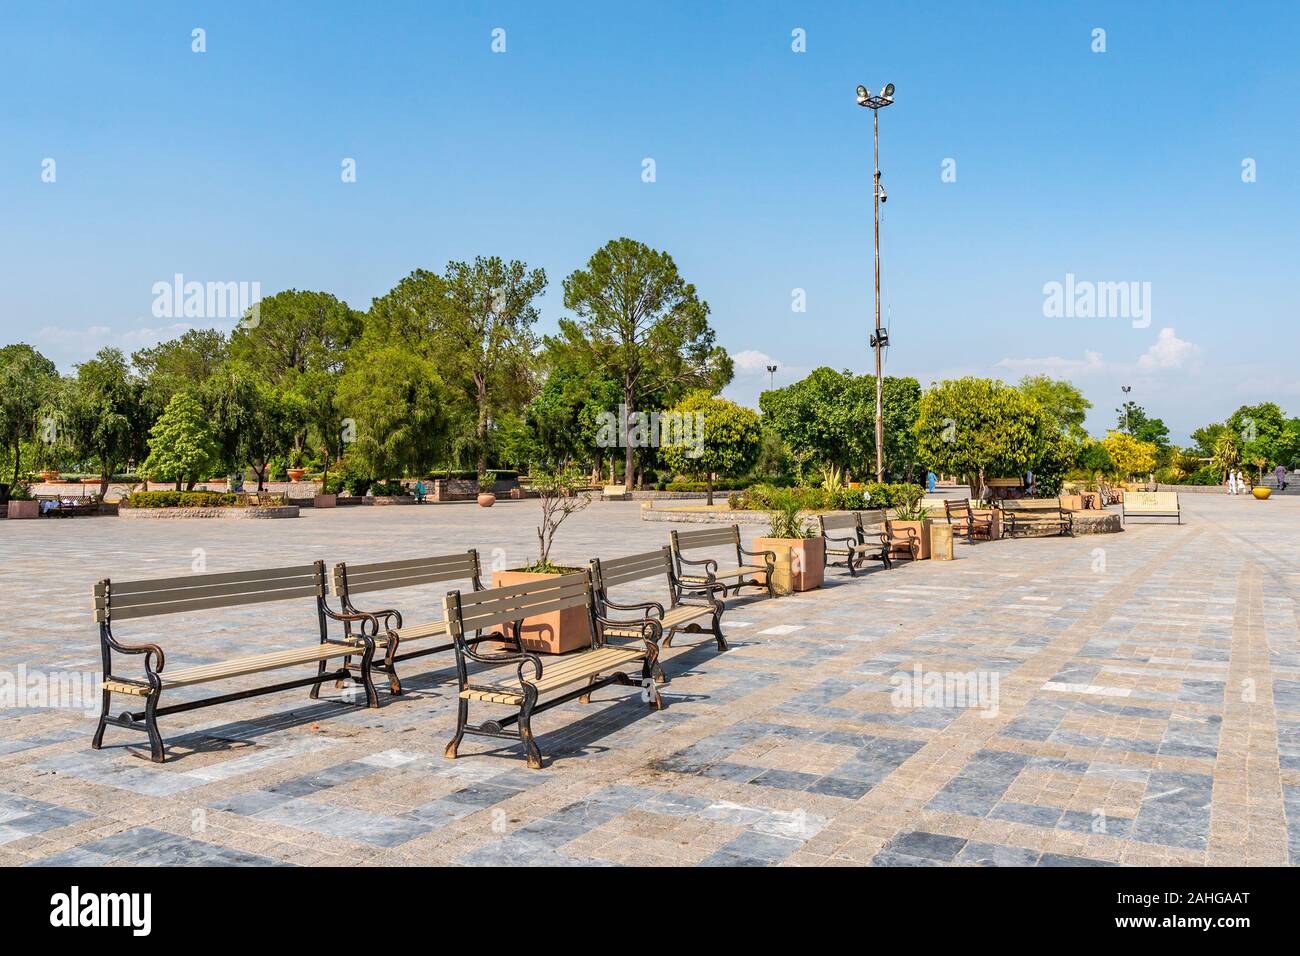 Islamabad, vue sur le lac pittoresque parc vue à couper le souffle de bancs assis sur un ciel bleu ensoleillé Jour Banque D'Images